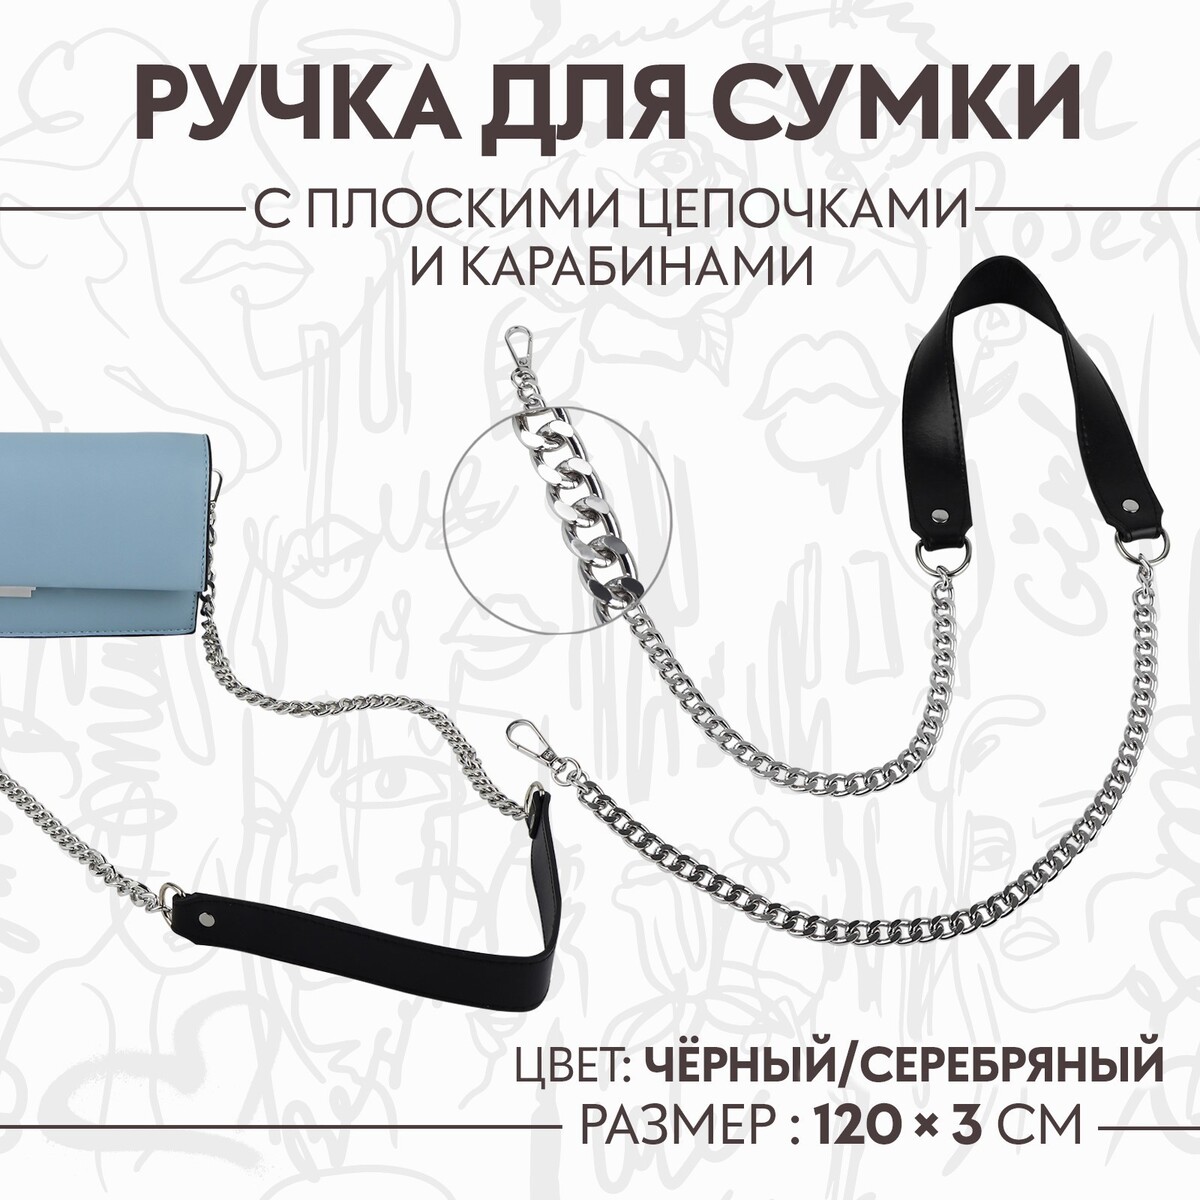 Ручка для сумки, с плоскими цепочками и карабинами, 120 × 3 см, цвет черный/серебряный ручка для сумки с цепочками и карабинами 120 × 1 8 см